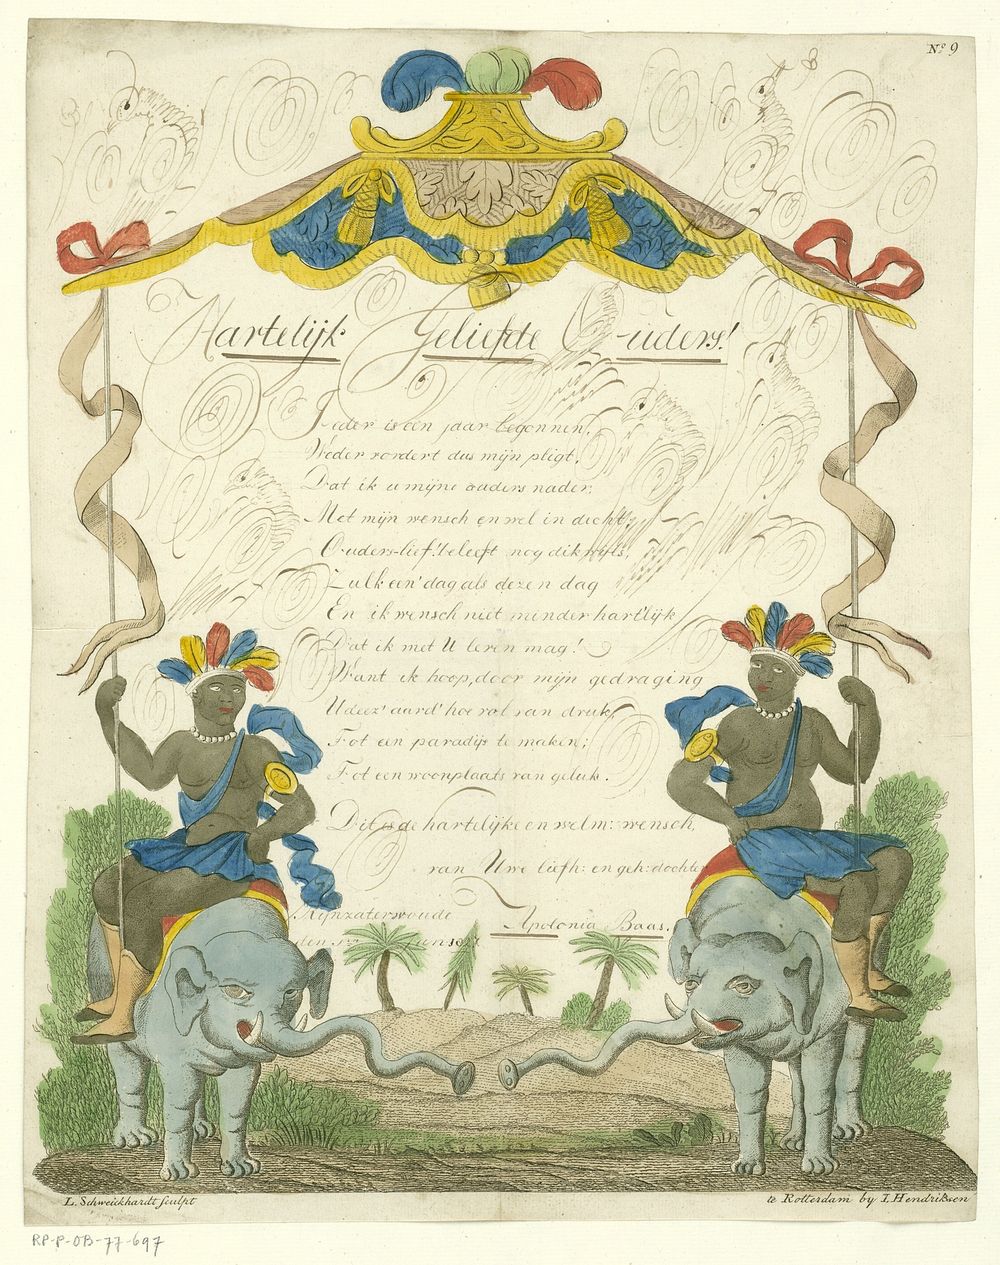 Wensbrief met zwarte mannen op olifanten (c. 1827) by Leonardus Schweickhardt and Jan Hendriksen